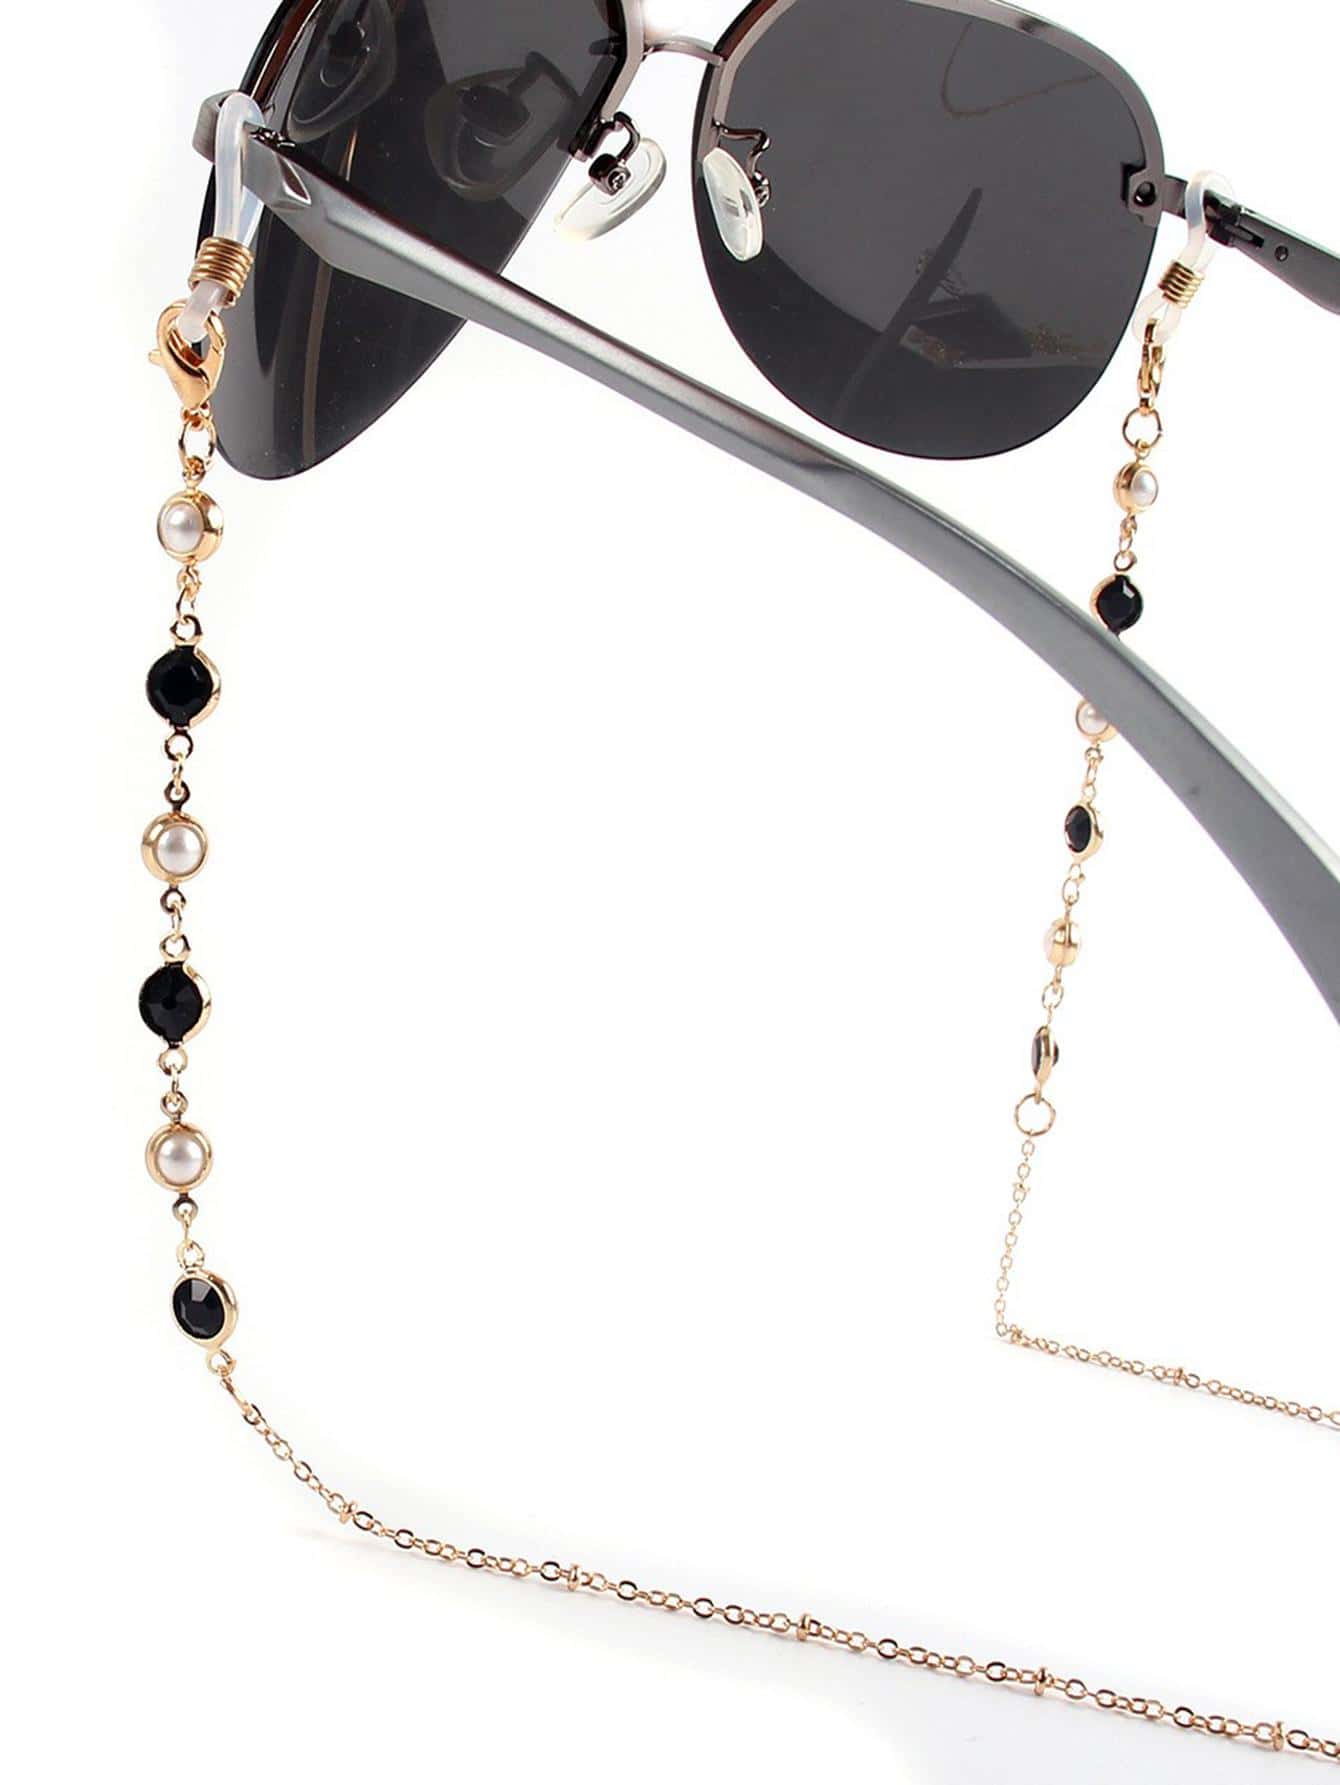 1шт женщин искусственный драгоценный камень жемчуг декор модные очки цепочка для украшения очков, золото брелок с драгоценным камнем исполняющим желания